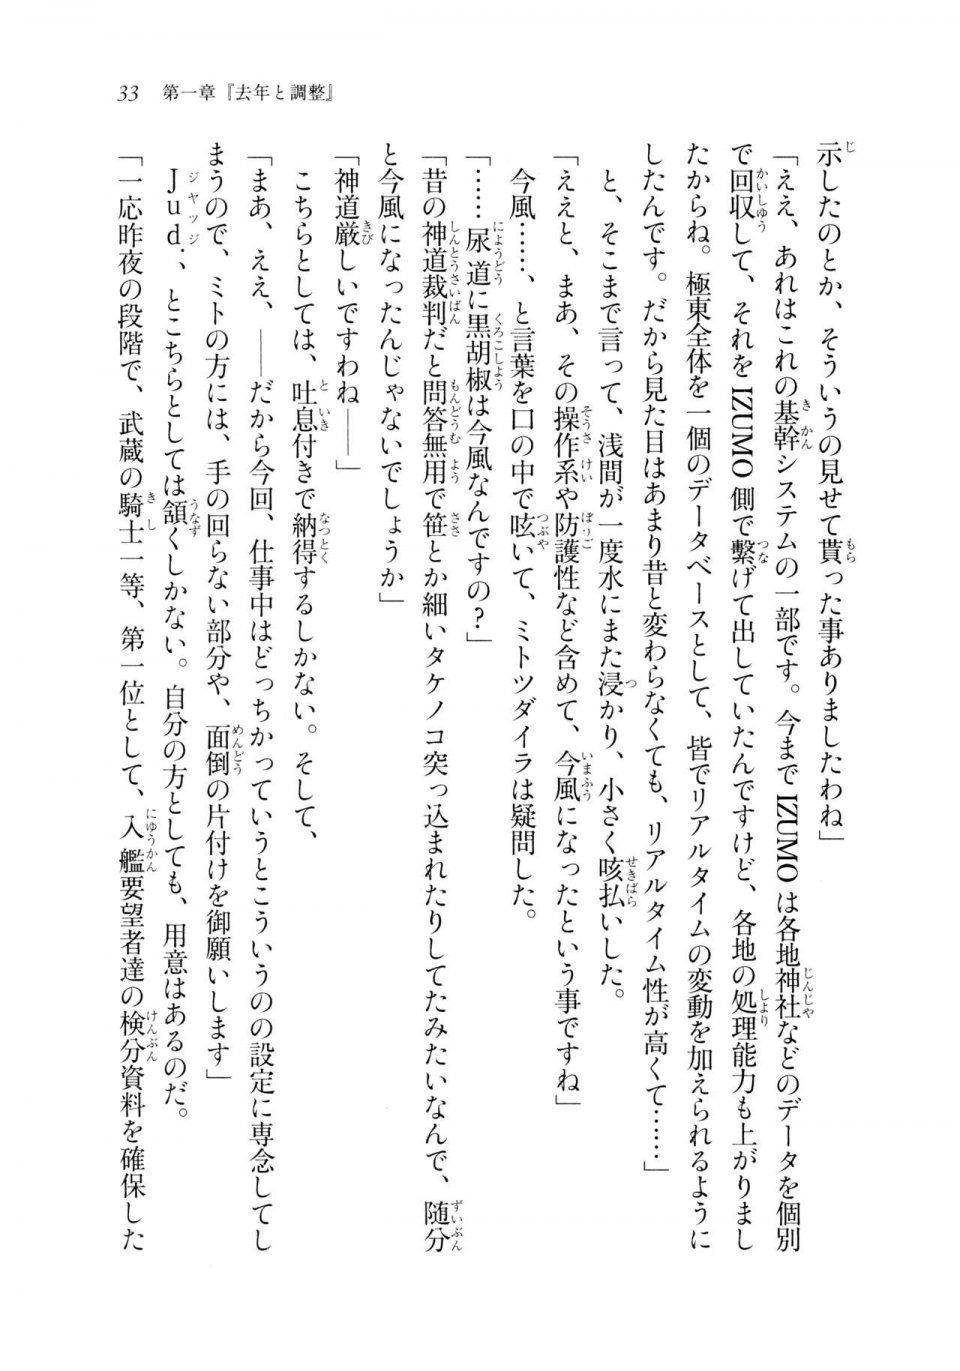 Kyoukai Senjou no Horizon LN Sidestory Vol 2 - Photo #31